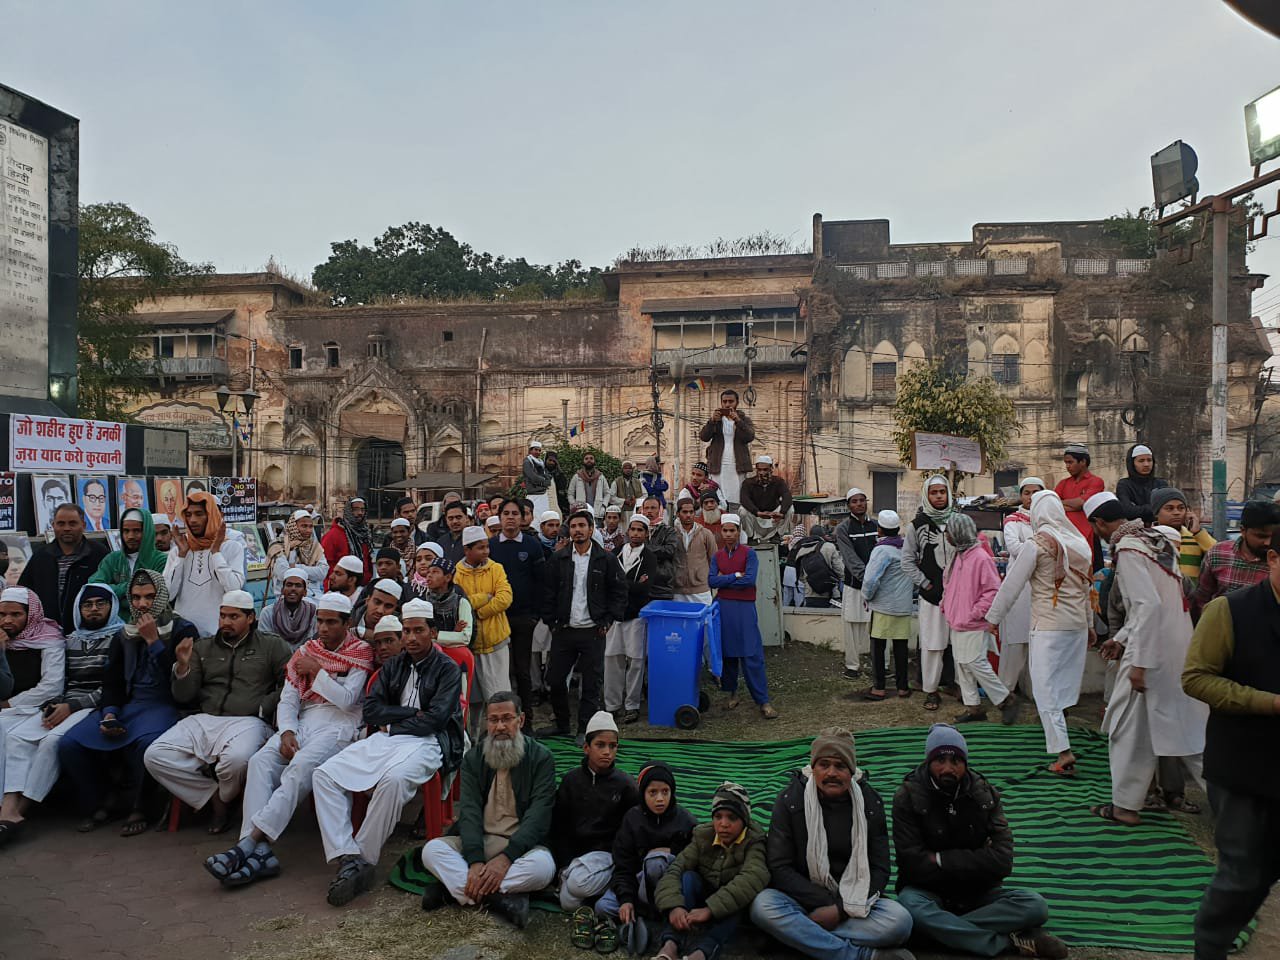 राजधानी भोपाल के इक़बाल मैदान पर जारी सत्याग्रह में शामिल हो रहे हैं हर धर्म के युवा व बुजुर्ग, अंतर्राष्ट्रीय शायरों ने भी दर्ज कराई अपनी उपस्थिति | New India Times